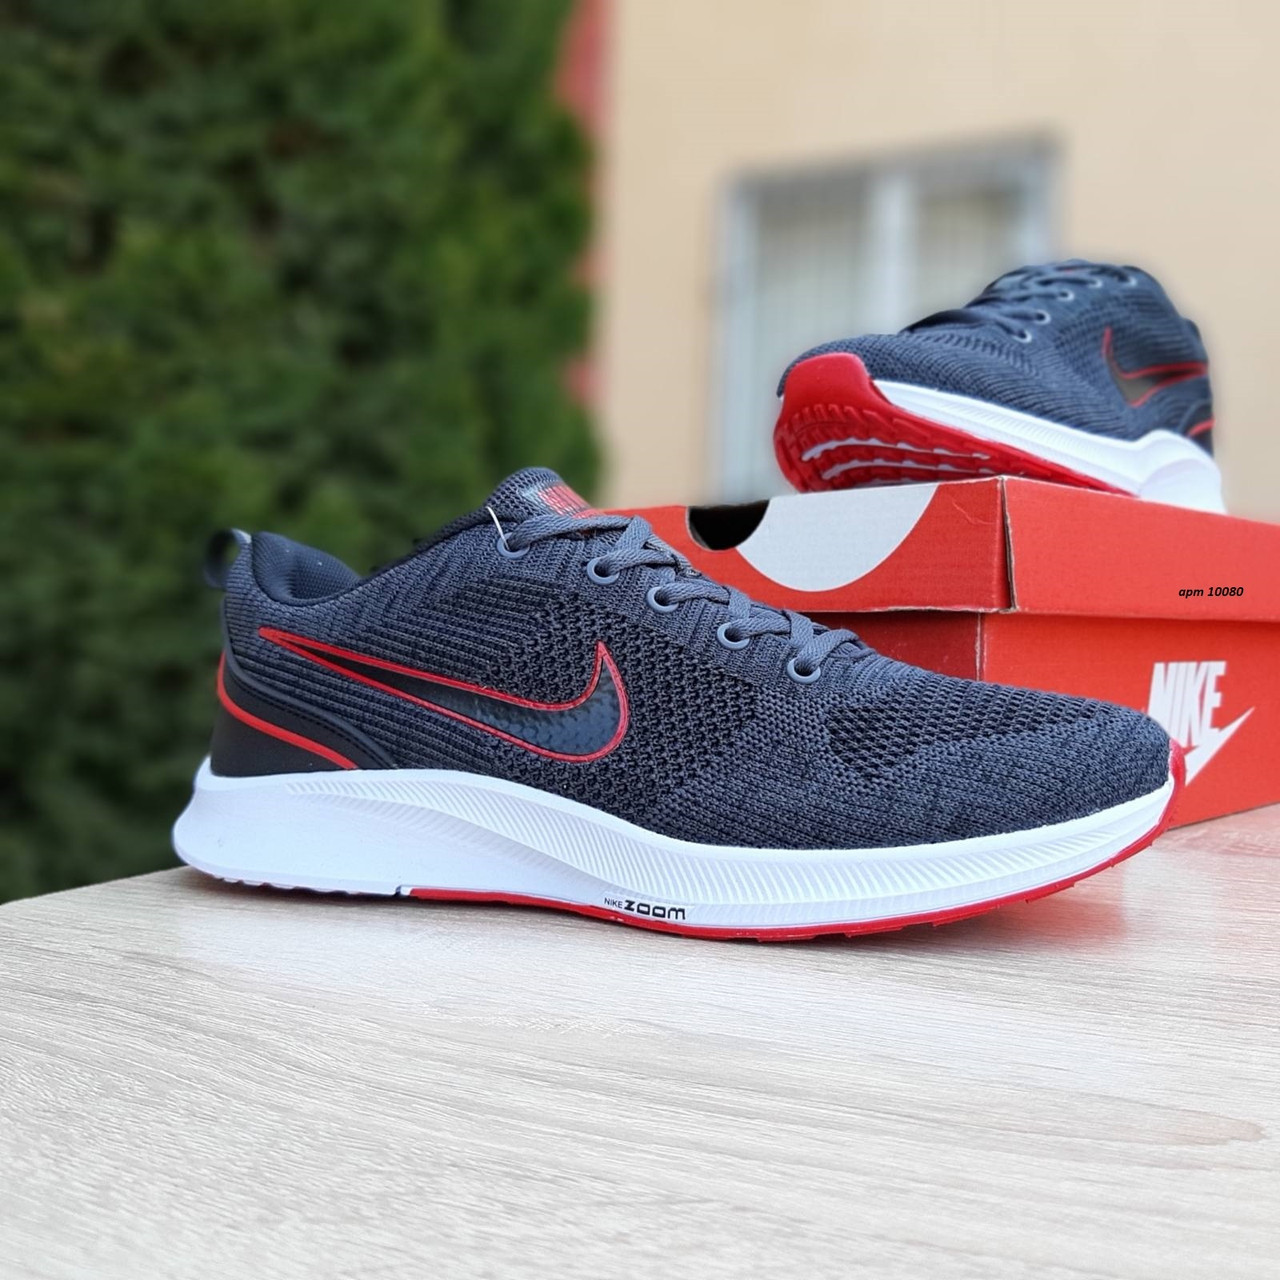 

Мужские кроссовки Nike Zoom Air, текстиль, серые с красным 45(29 см), размеры:43,44,45